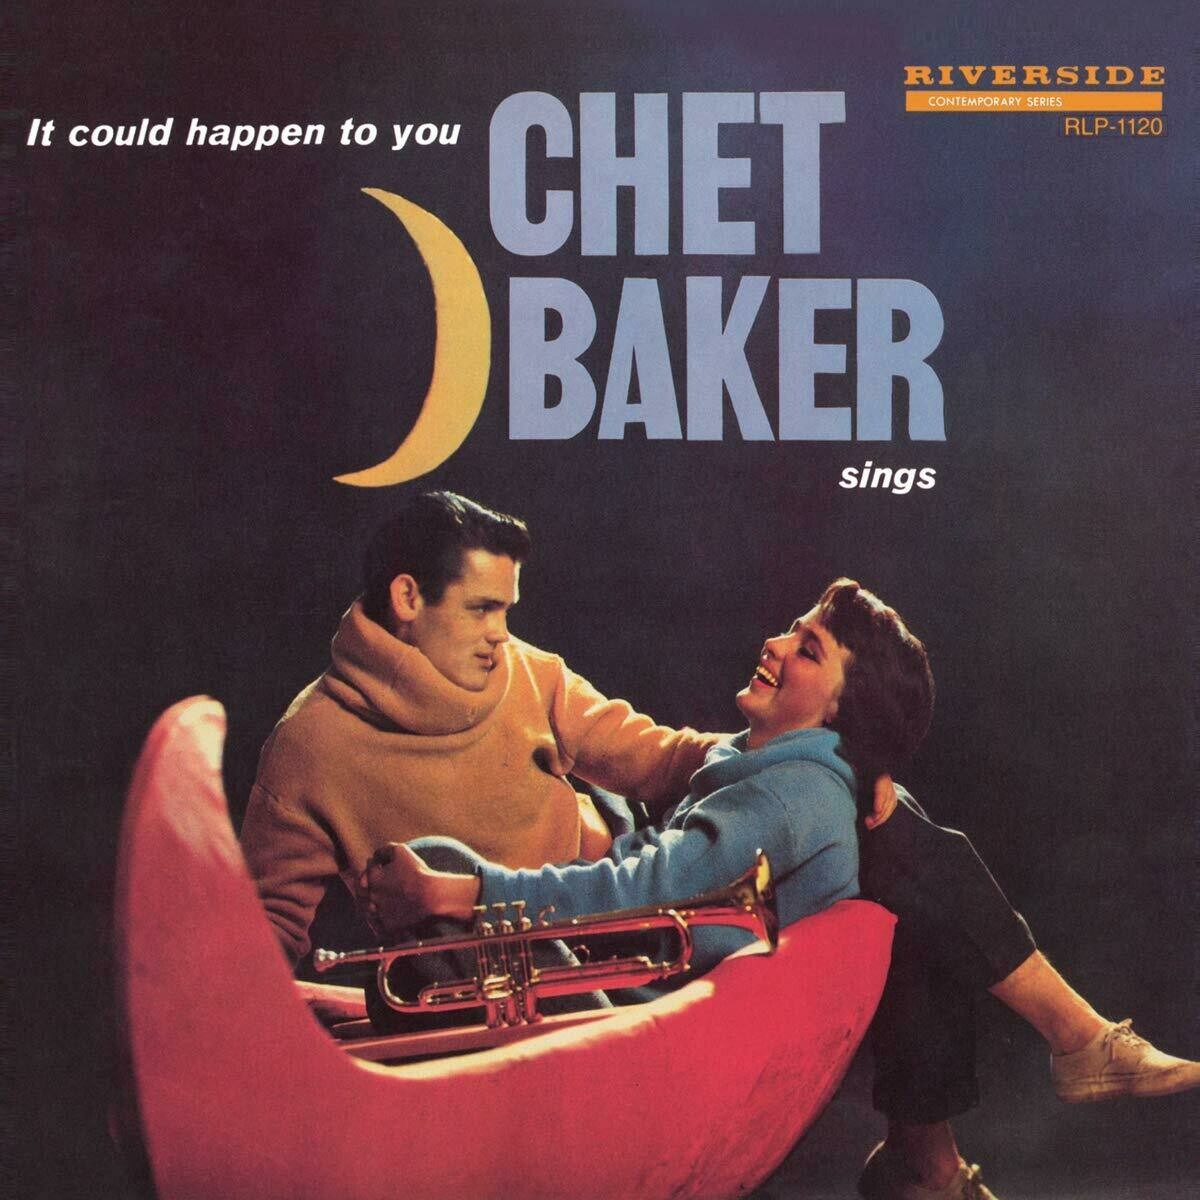 Chet Baker "Chet Baker Sings"